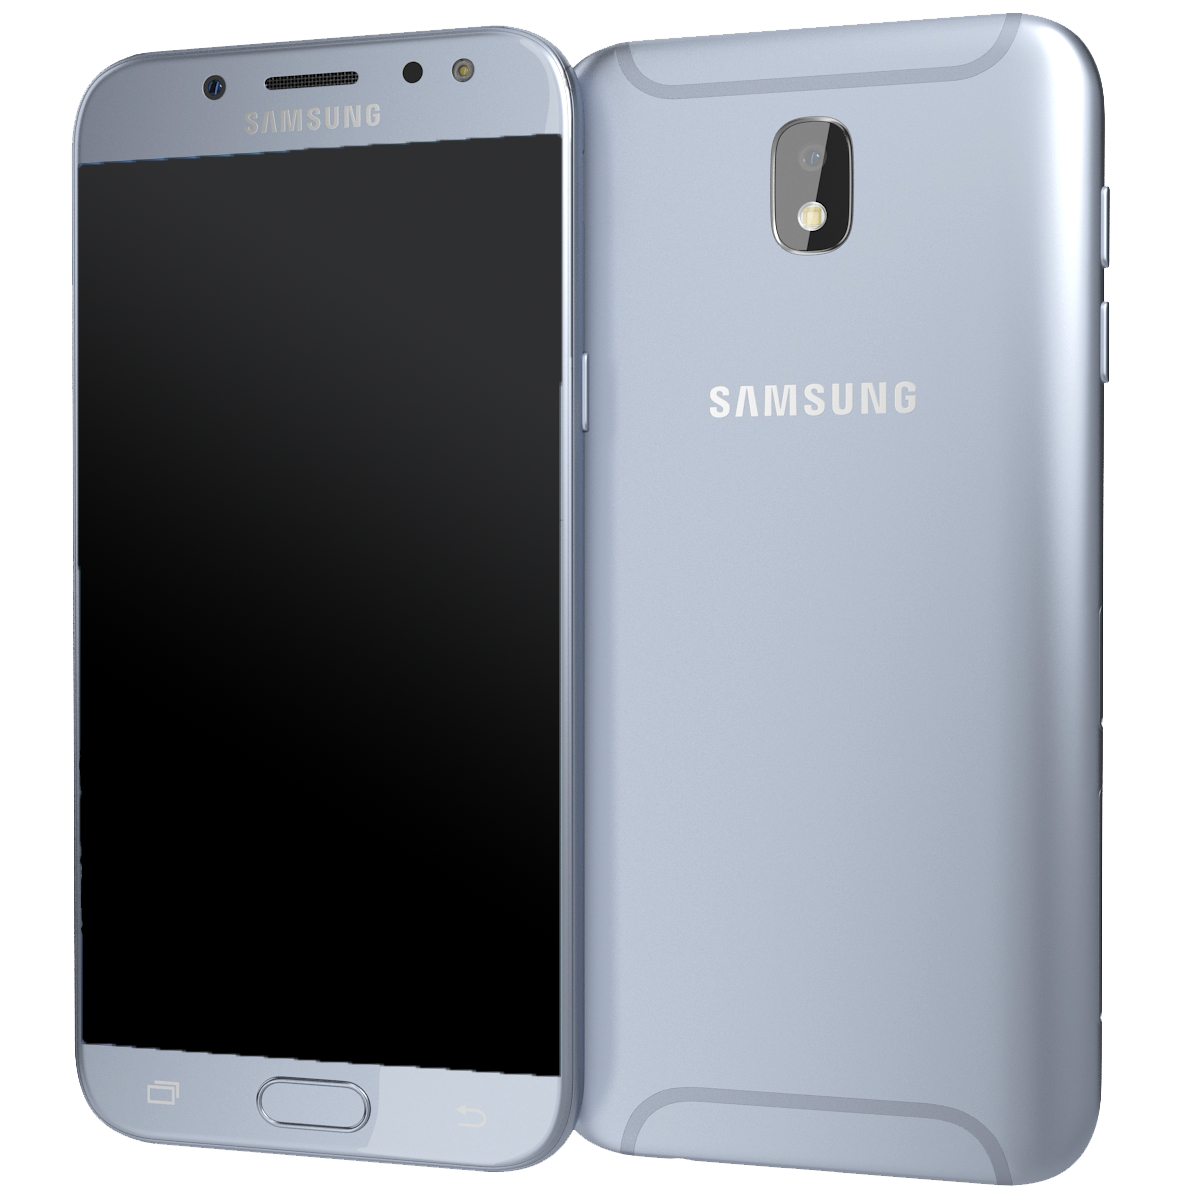 Samsung Galaxy J5 (2017) Dual-SIM blau - Ohne Vertrag